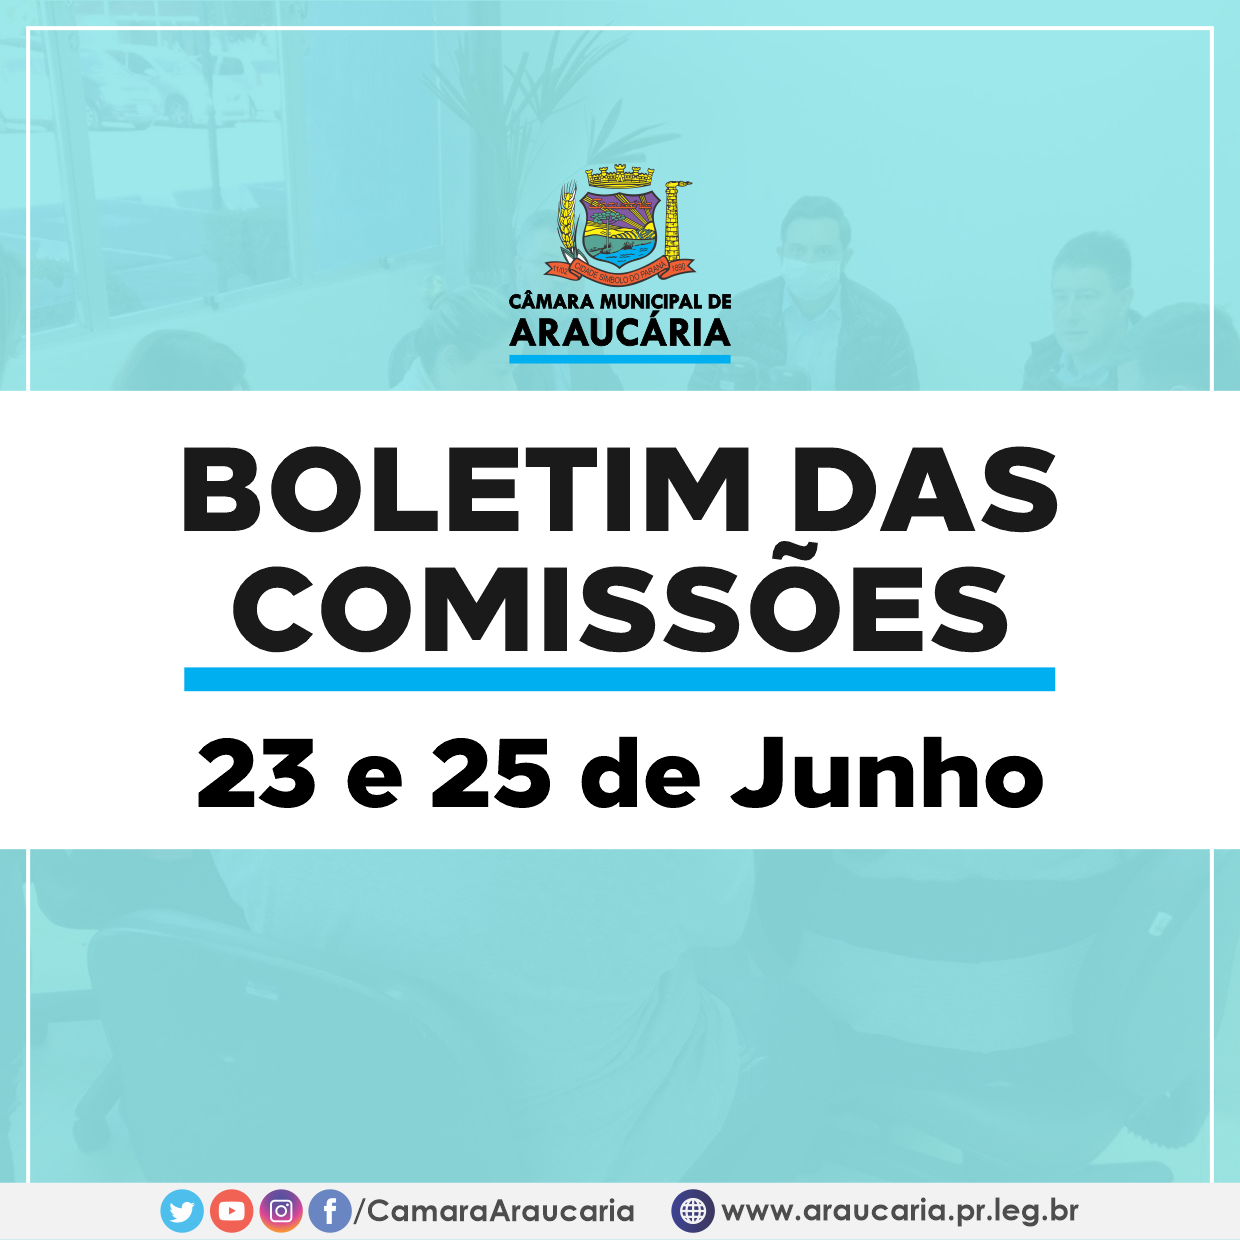 Boletim das Comissões – Saiba como foram as reuniões do dia 23 e 25 de Junho